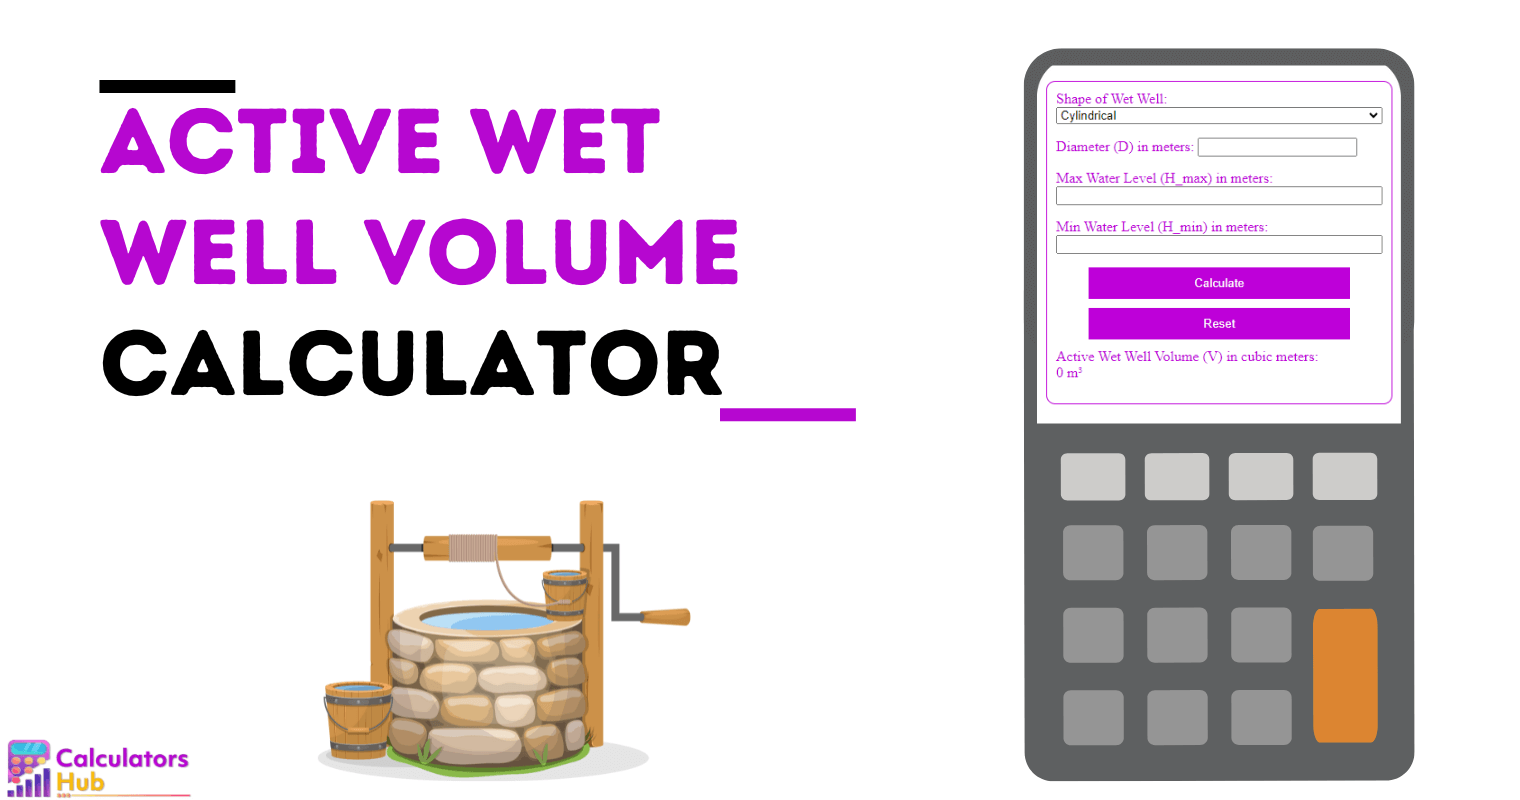 Active Wet Well Volume Calculator